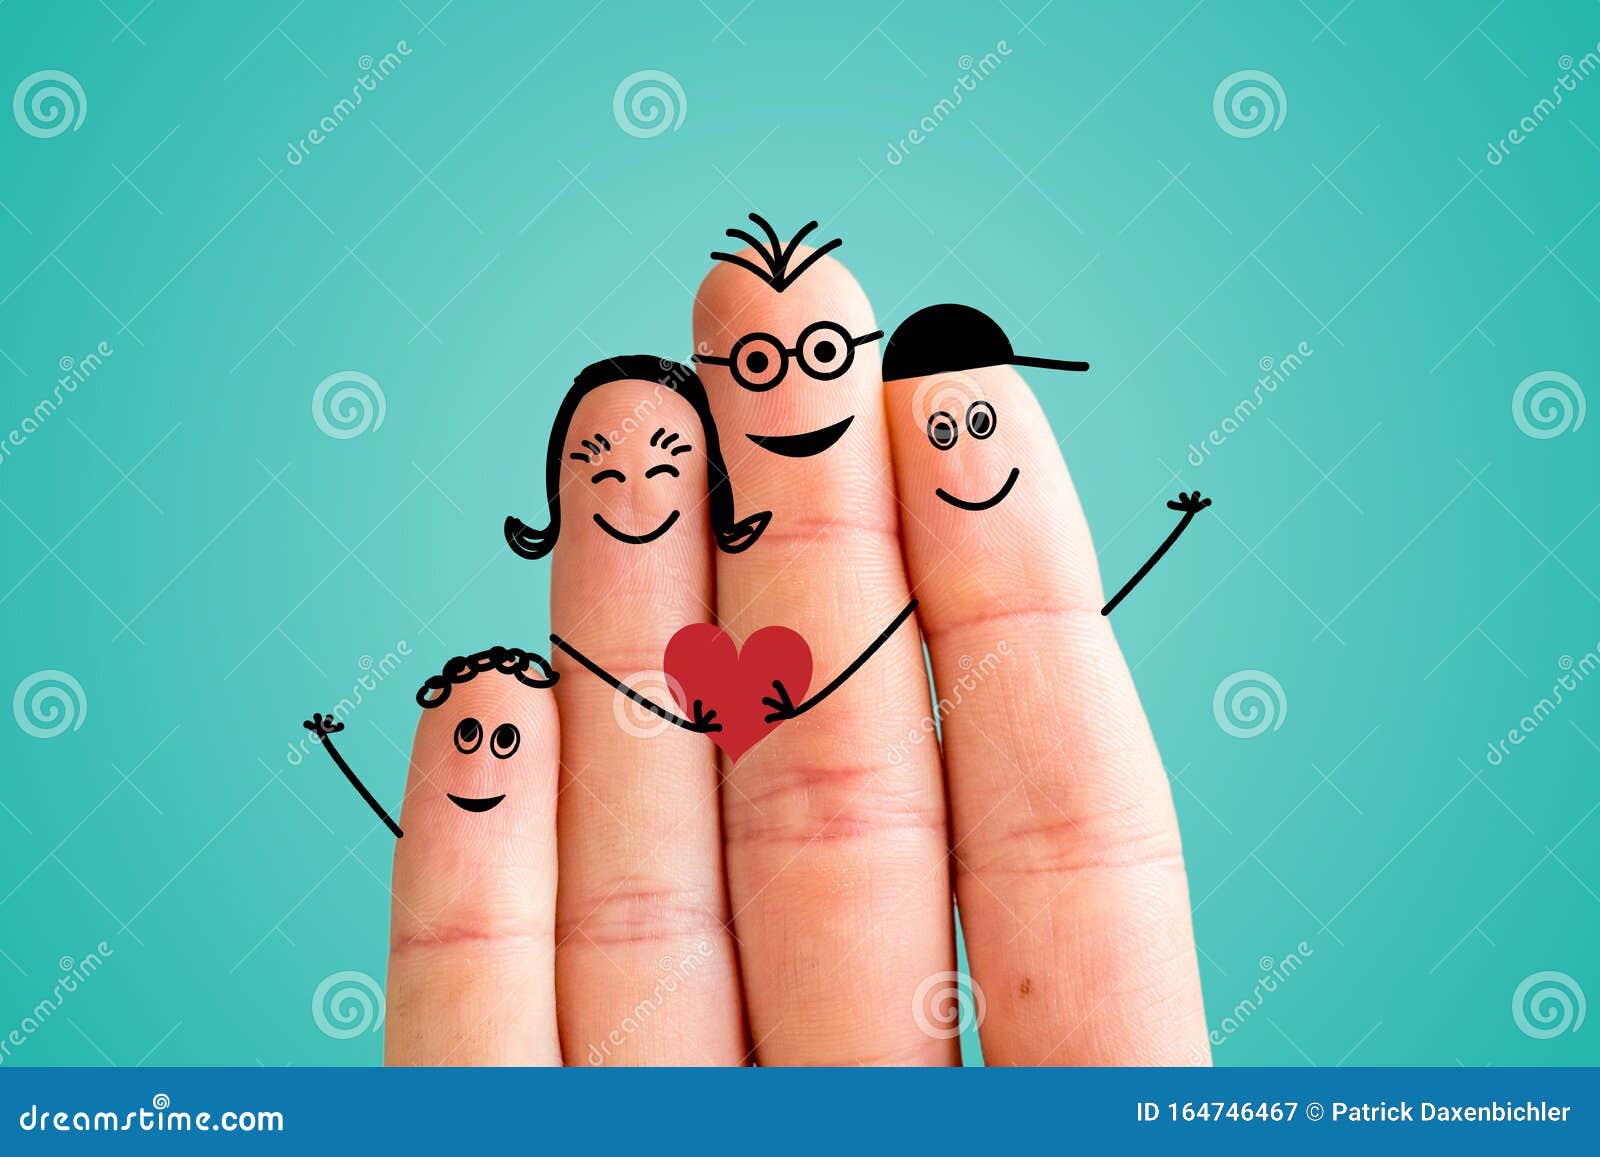 Finger Family Concept: Joyful Finger Family Smiling. Blue ...